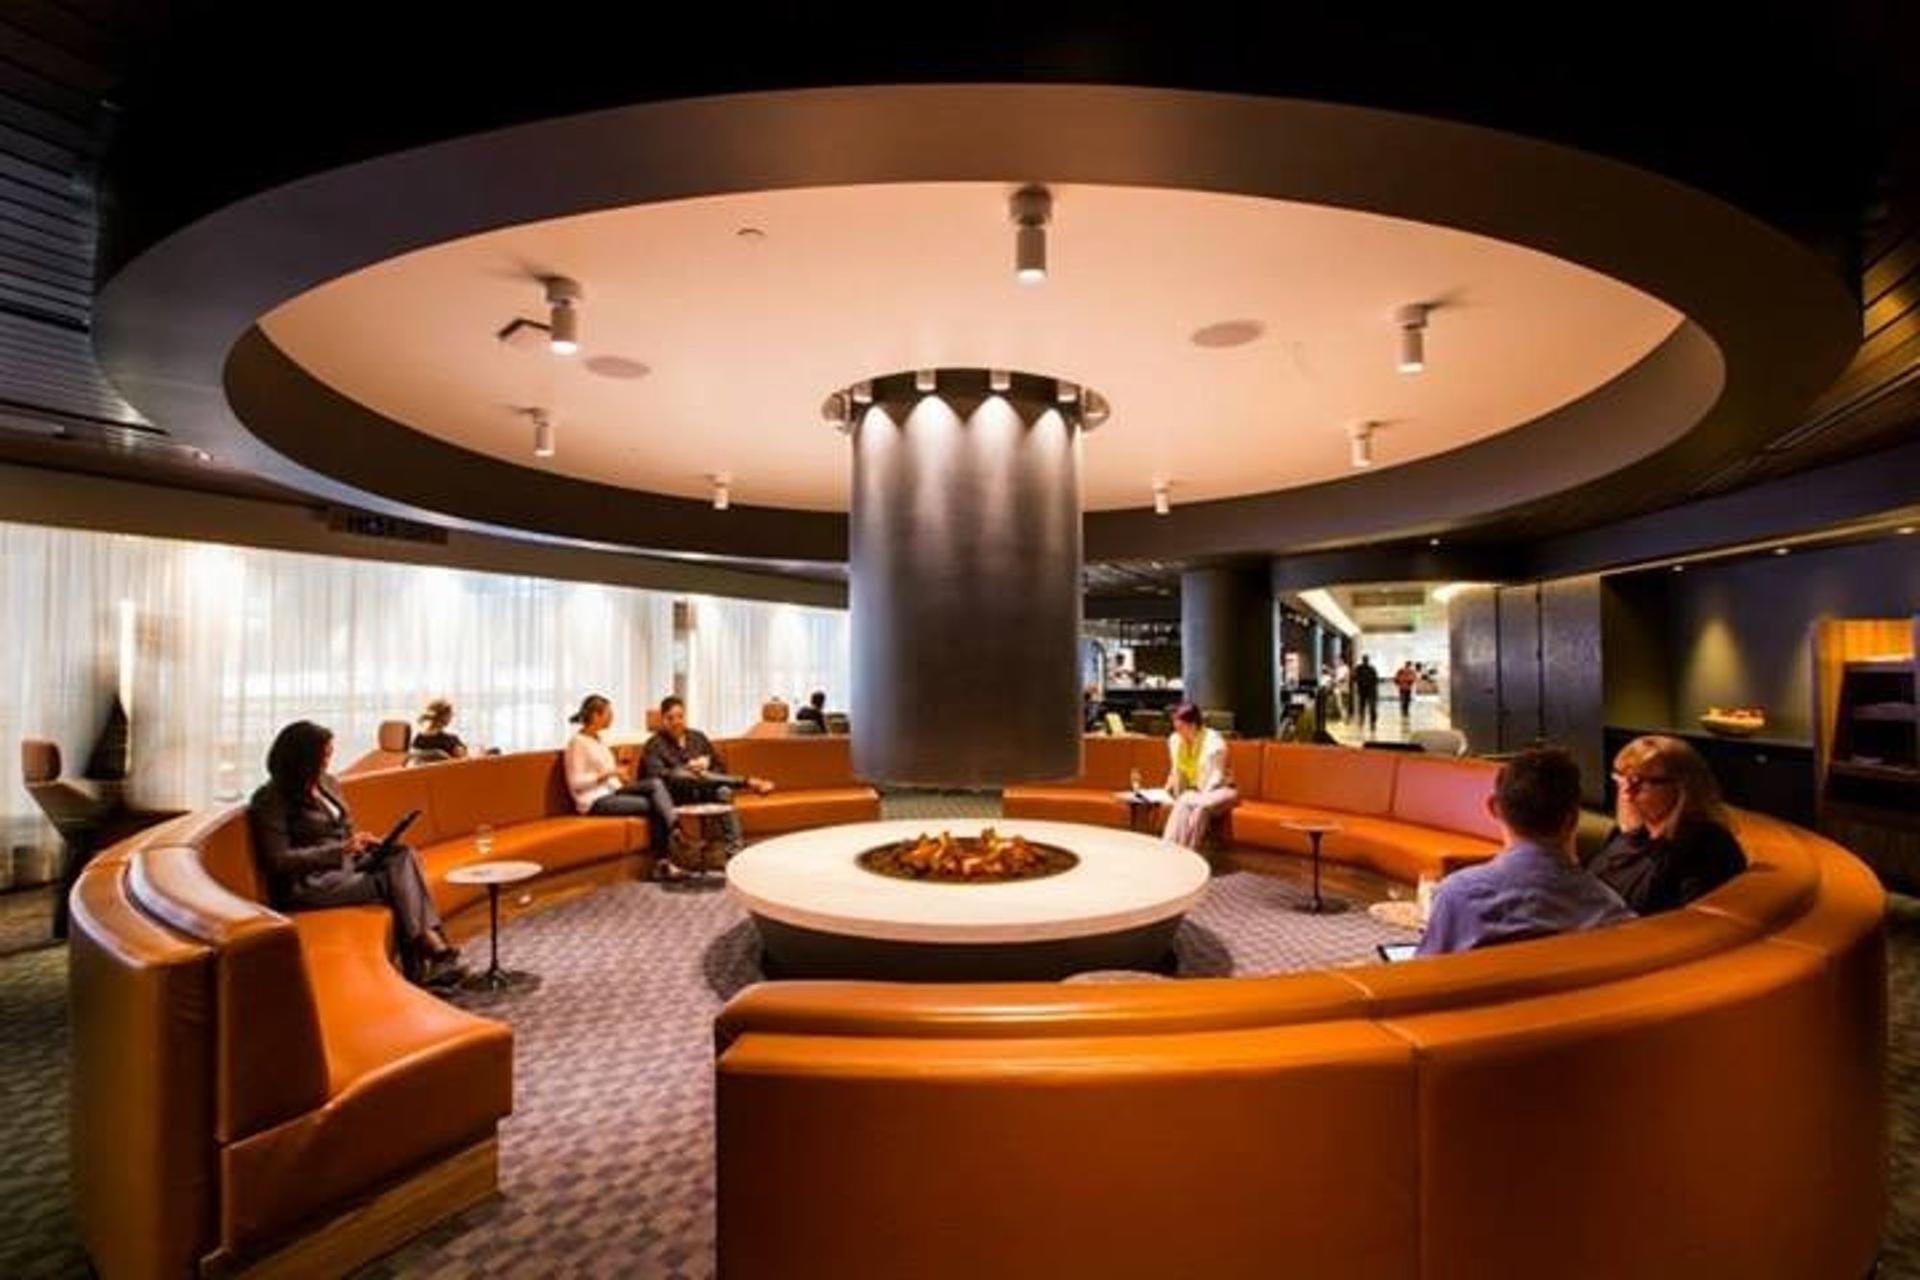 oneworld International Business Lounge image 6 of 21